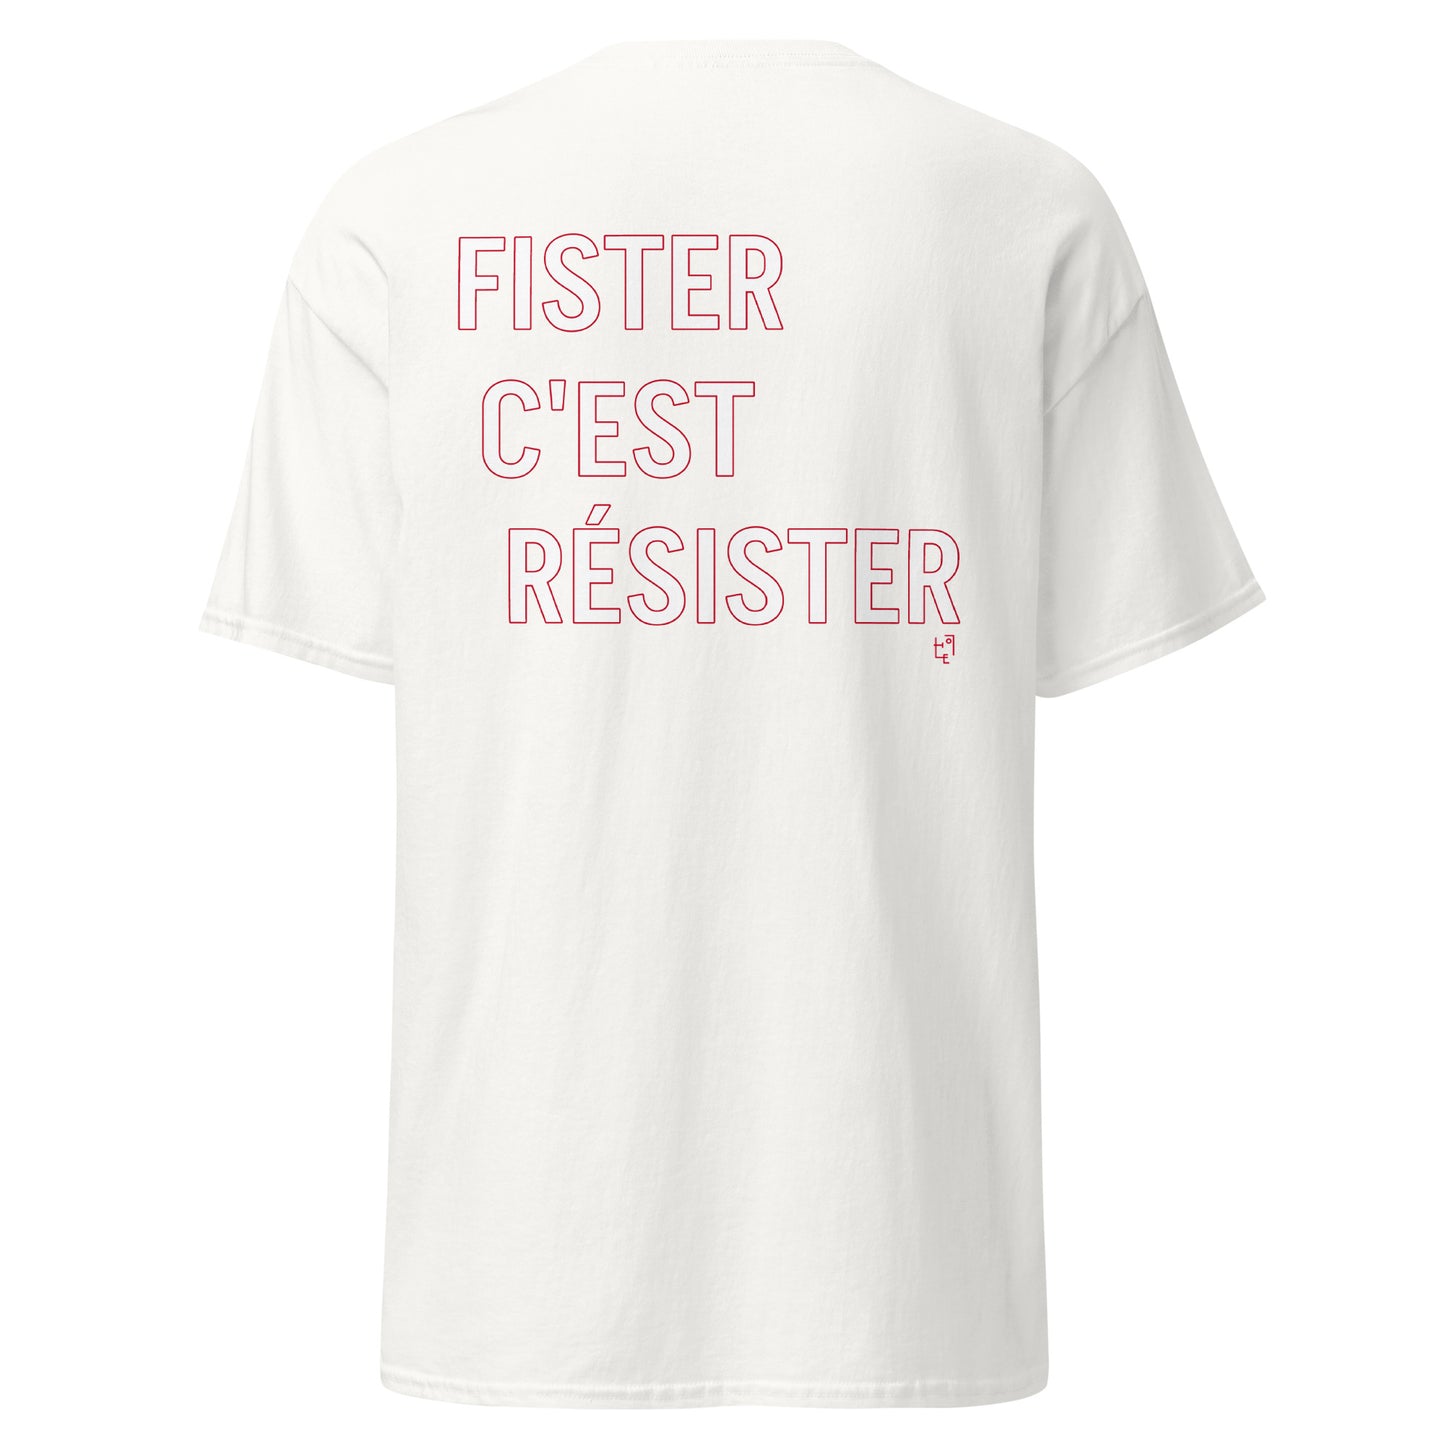 FISTER C'EST RESISTER T